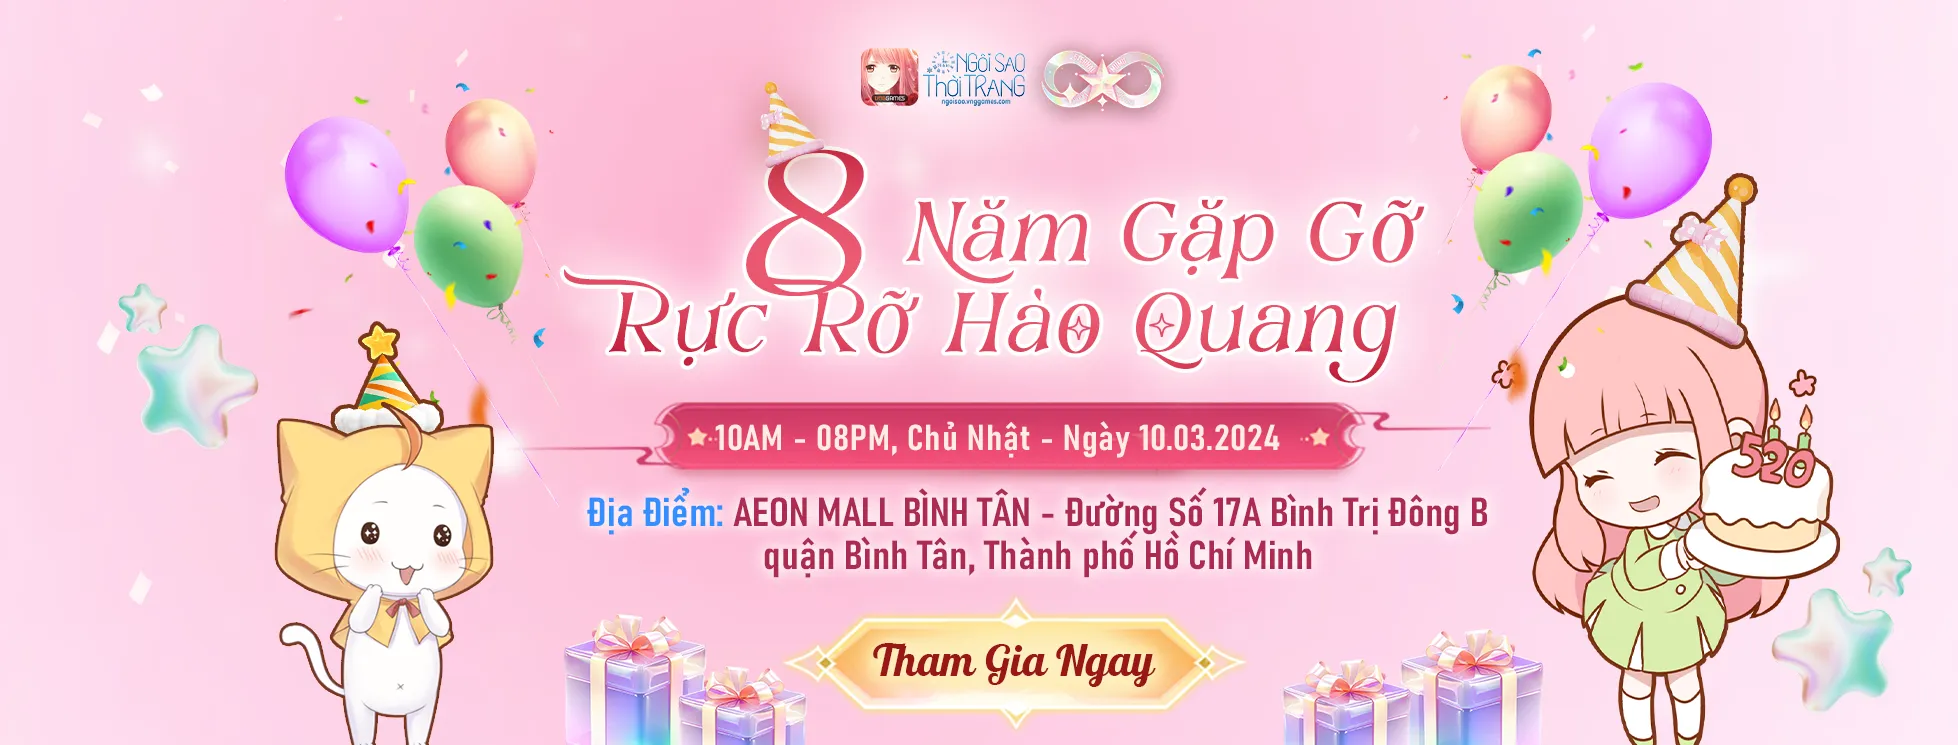 Ngôi Sao Thời Trang VNG tổ chức offline tại trung tâm thương mại lớn nhất nhì TP.HCM